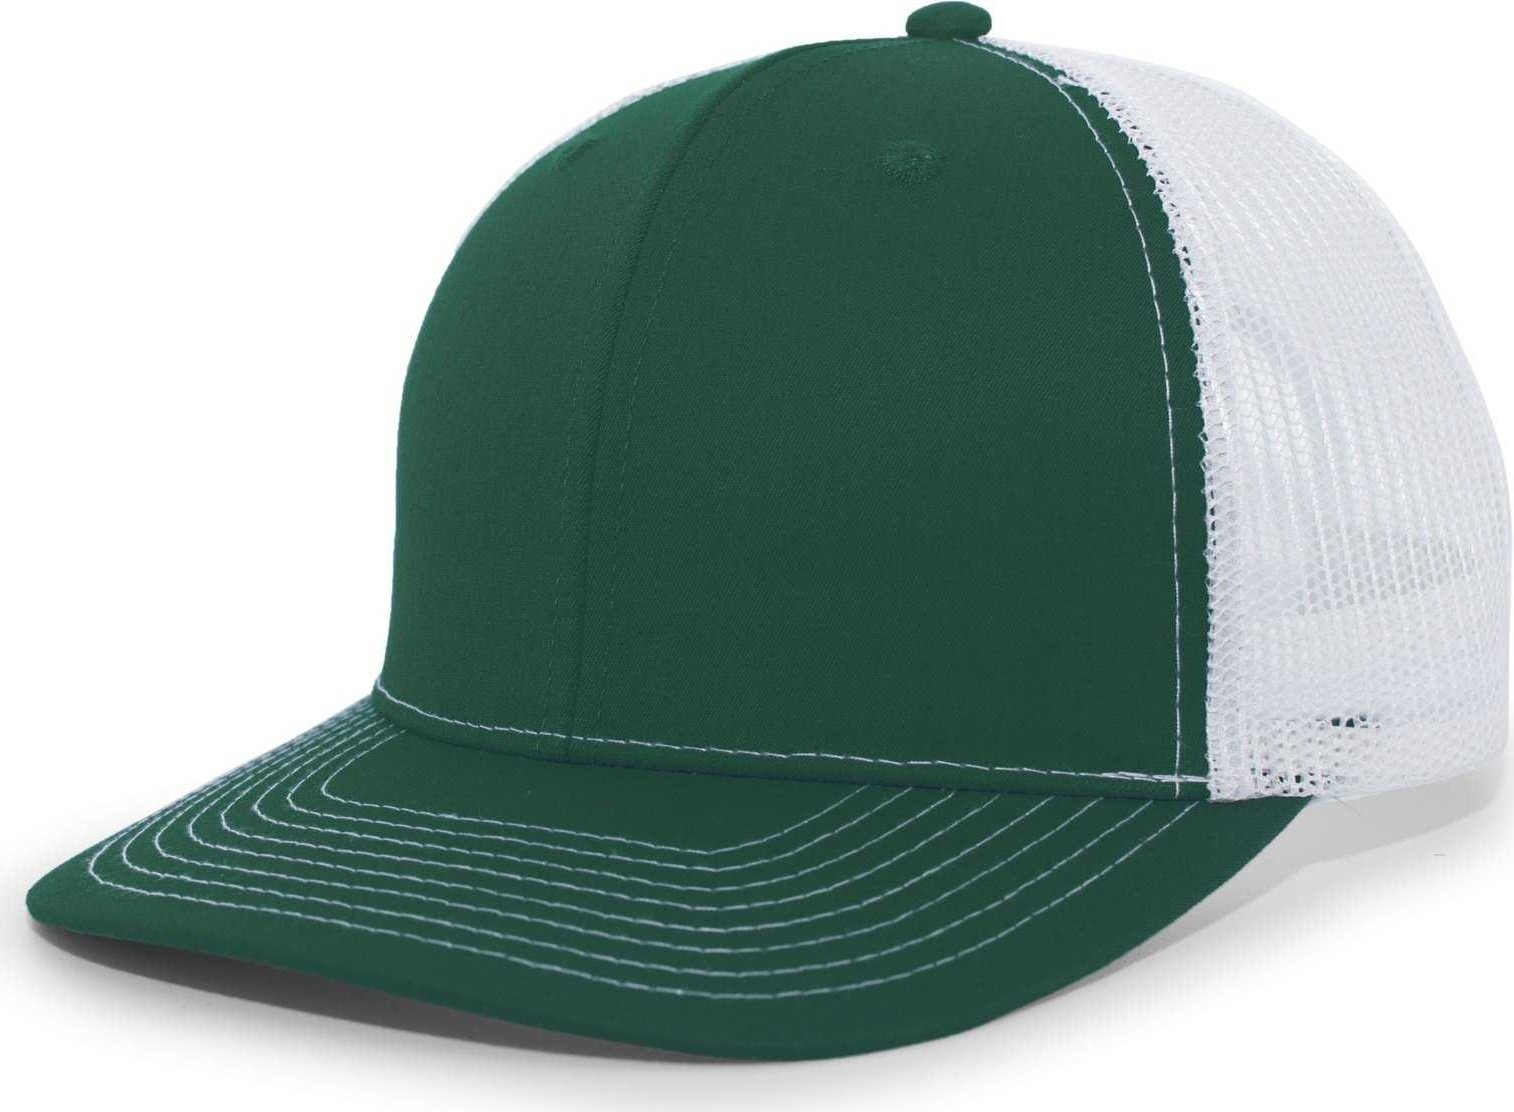 Pacific Headwear PE10 Trucker Snapback Cap - Dark Green White - HIT A Double